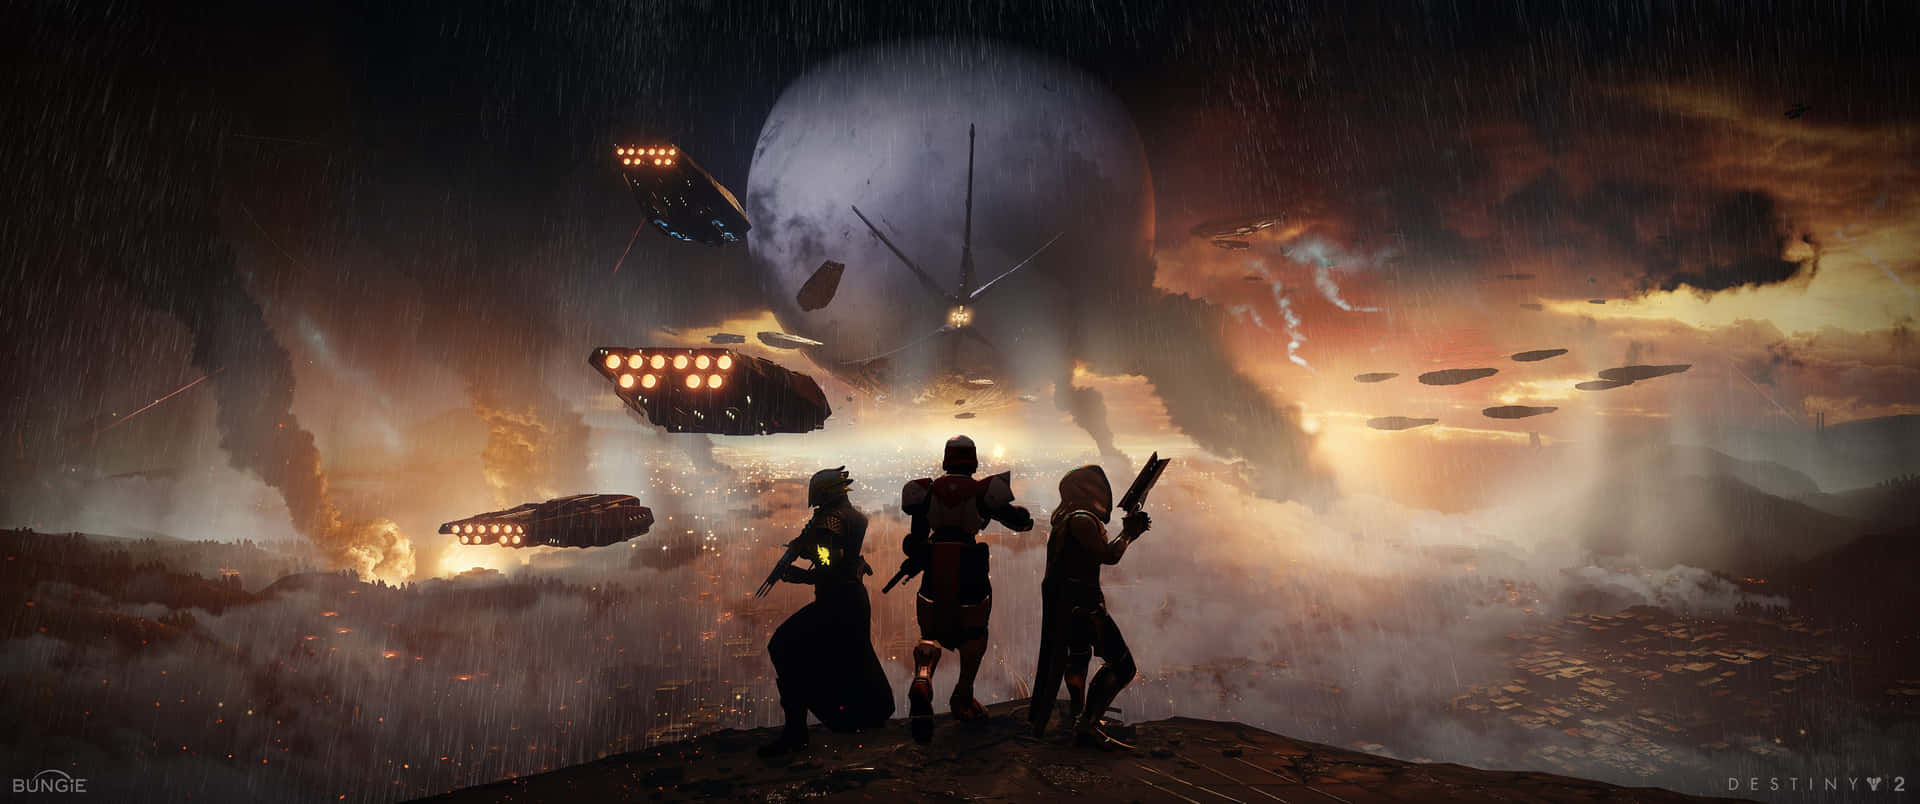 Den bedste måde at nyde udsigten til Titan - med et spil af Destiny 2. Wallpaper